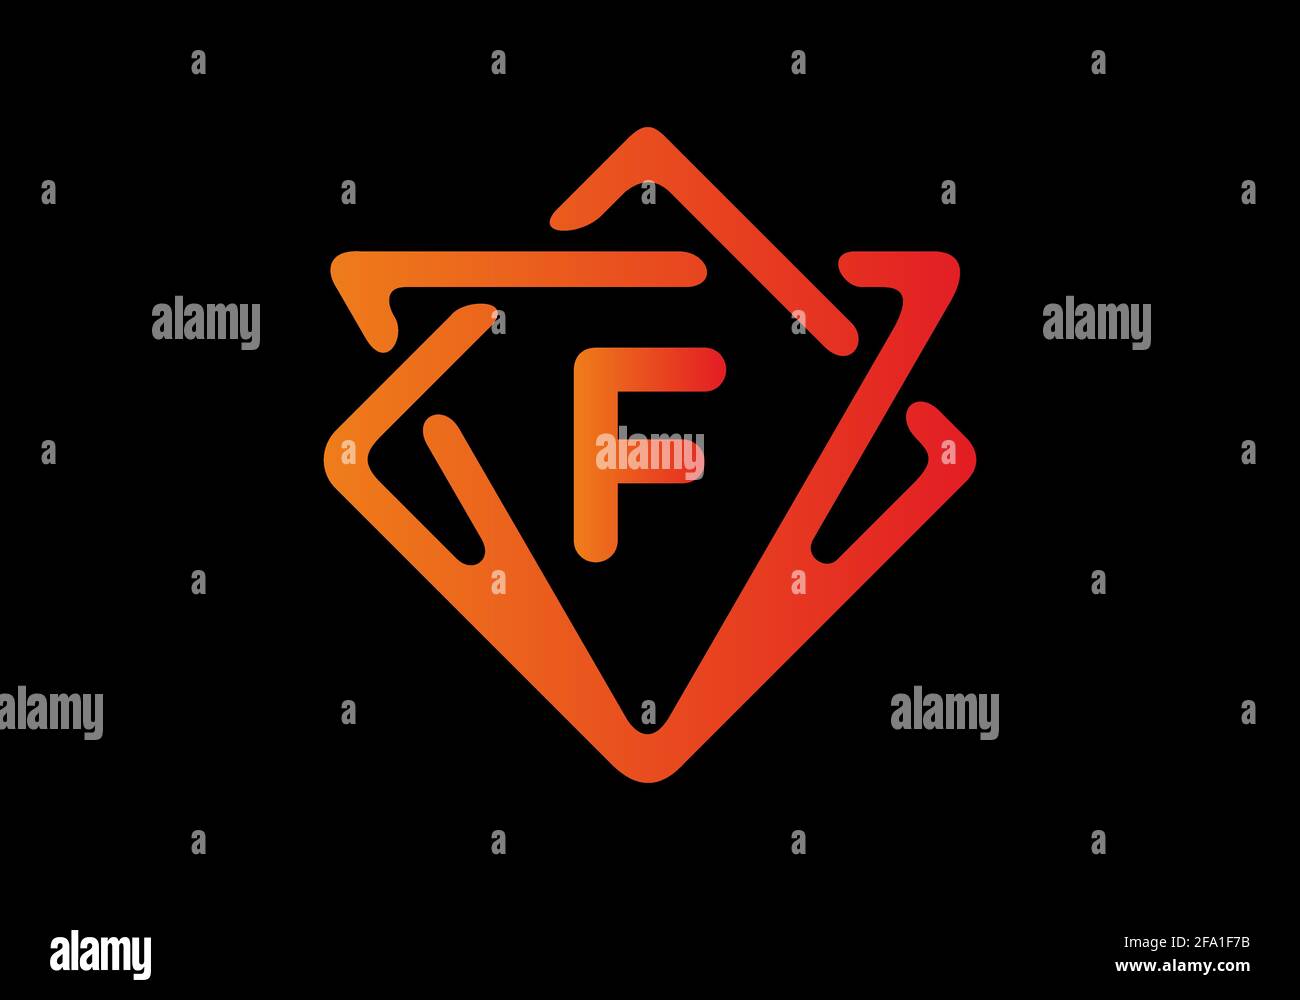 Dégradé de couleur rouge orange de la lettre initiale F. Illustration de Vecteur